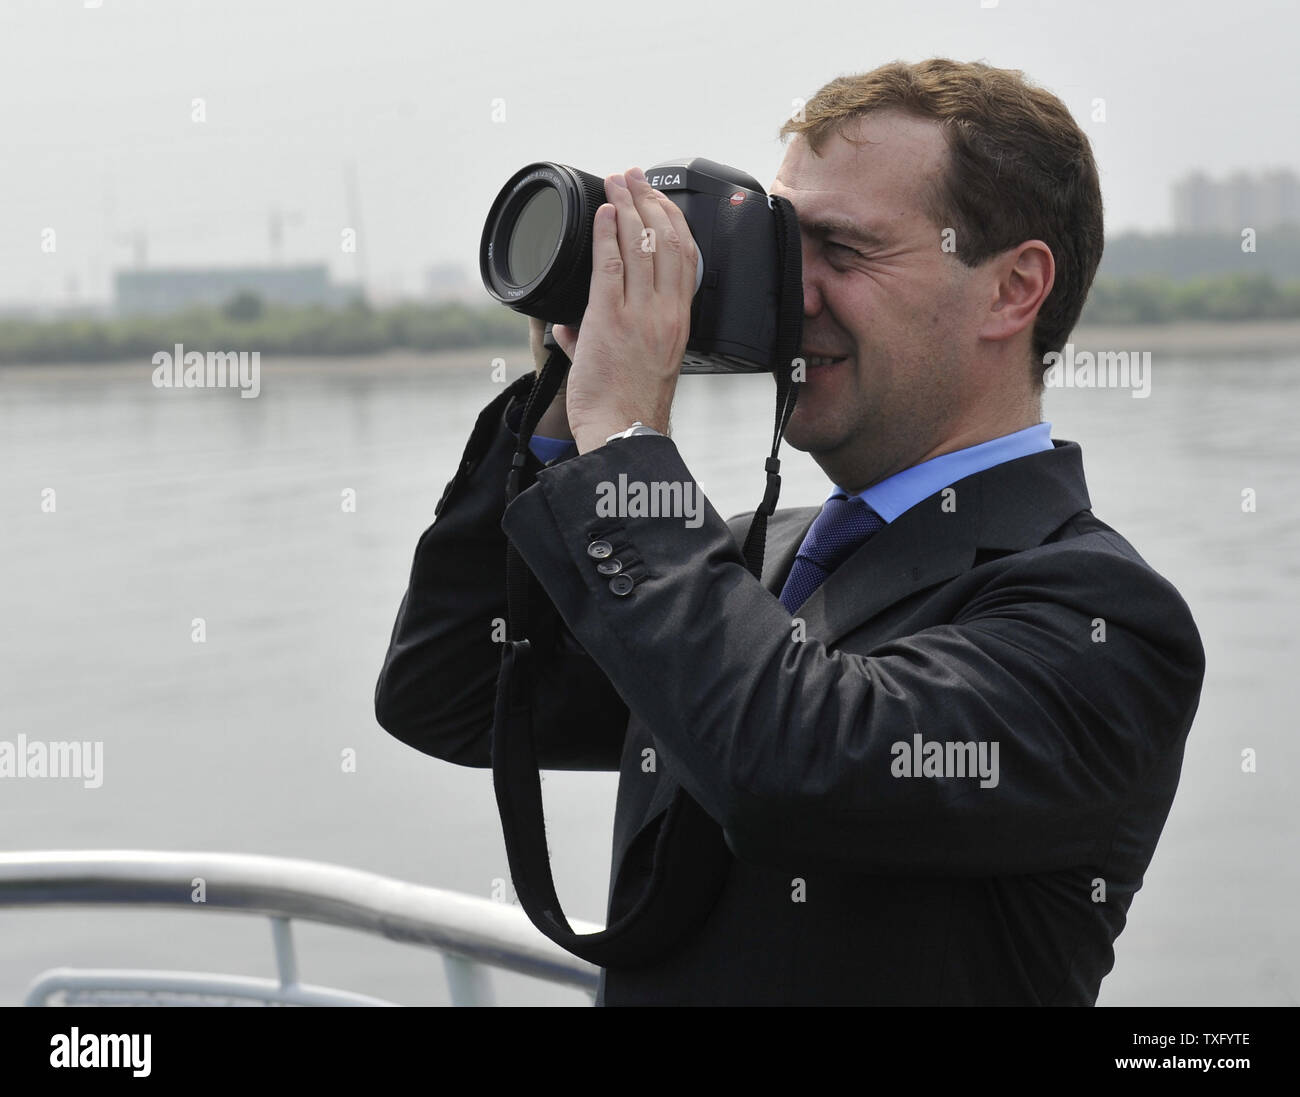 Der russische Präsident Dmitri Medwedew nimmt Bilder während einer Bootsfahrt auf dem Amur im Fernen Osten Stadt blagoweschtschensk am 3. Juli 2010 während der Tour durch den Osten Russland. UPI/Alex Volgin Stockfoto